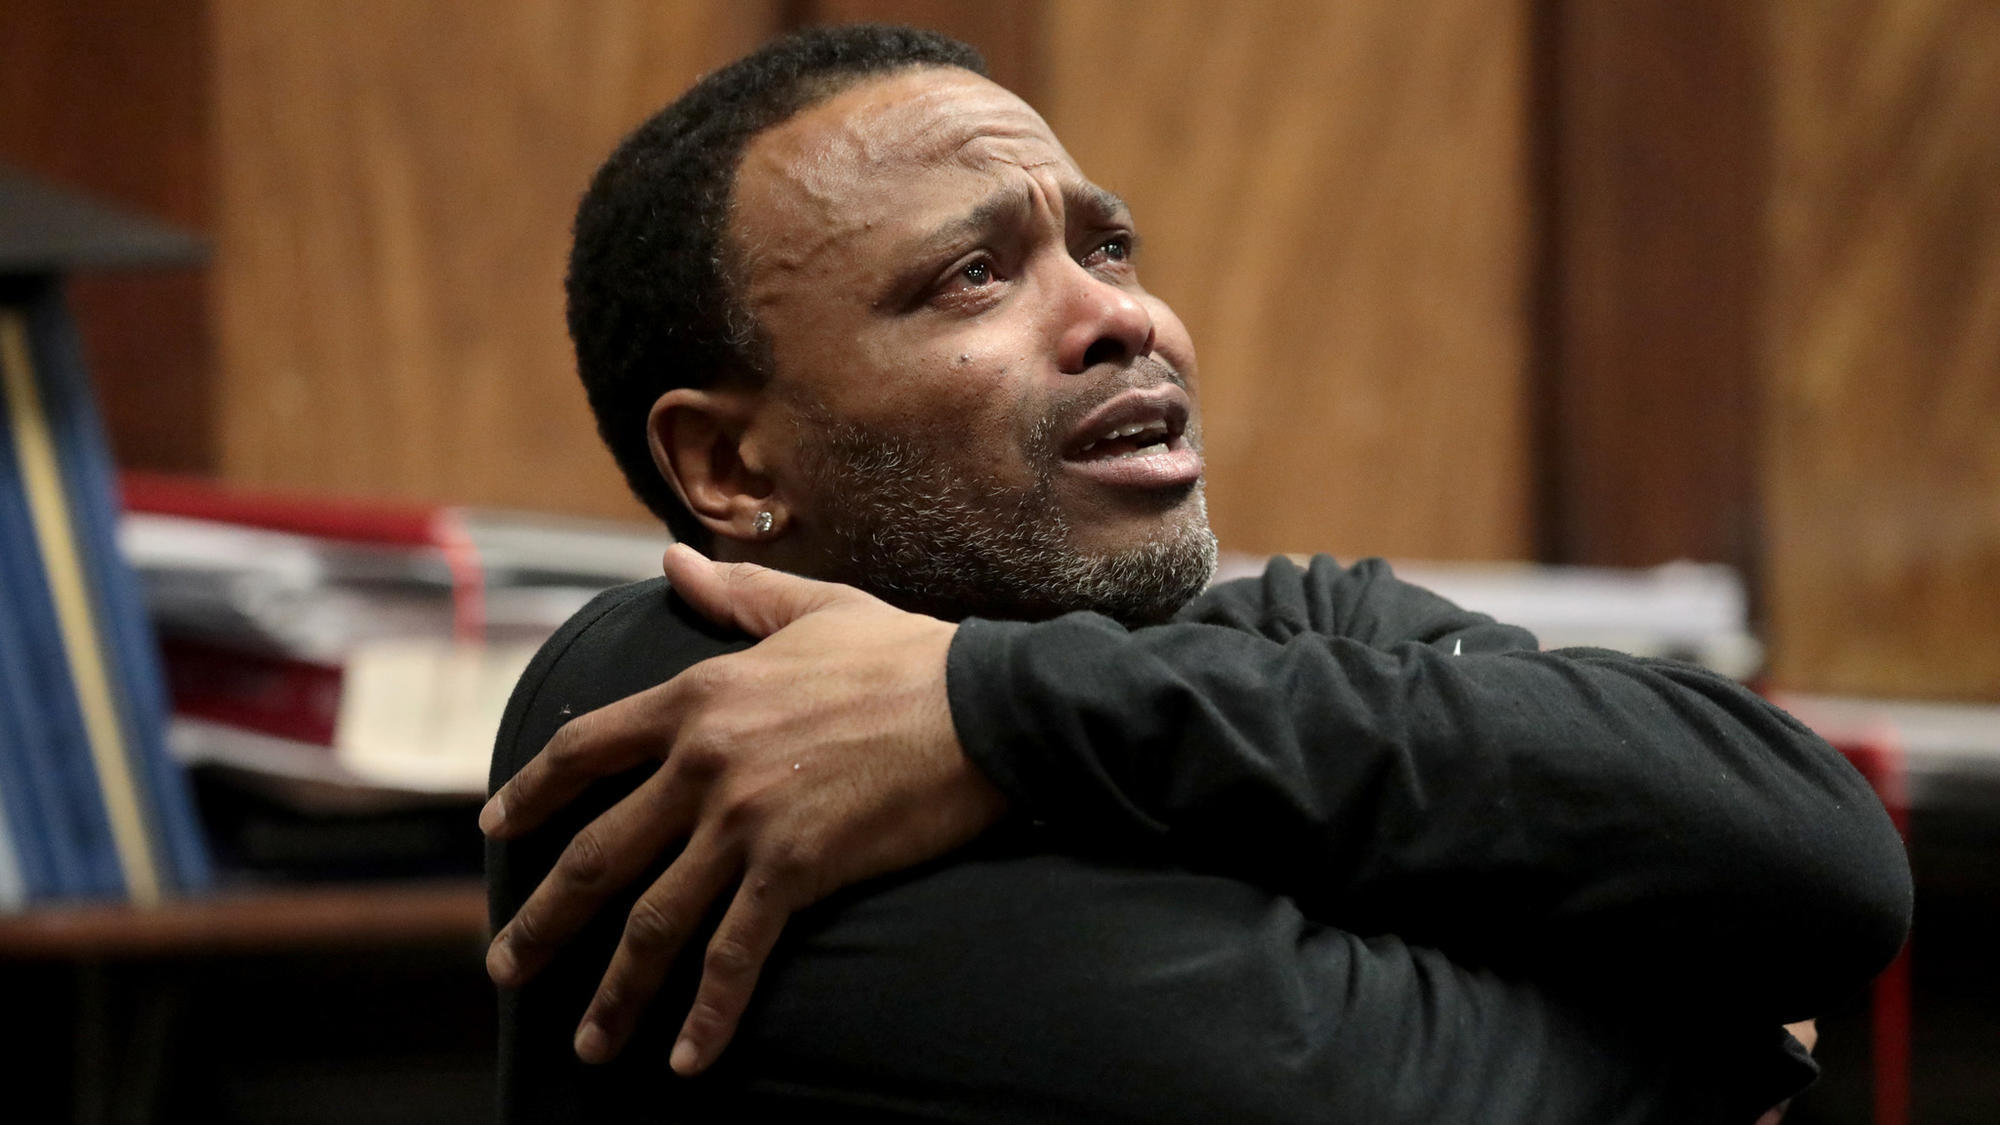 Image result for images of black men in tears